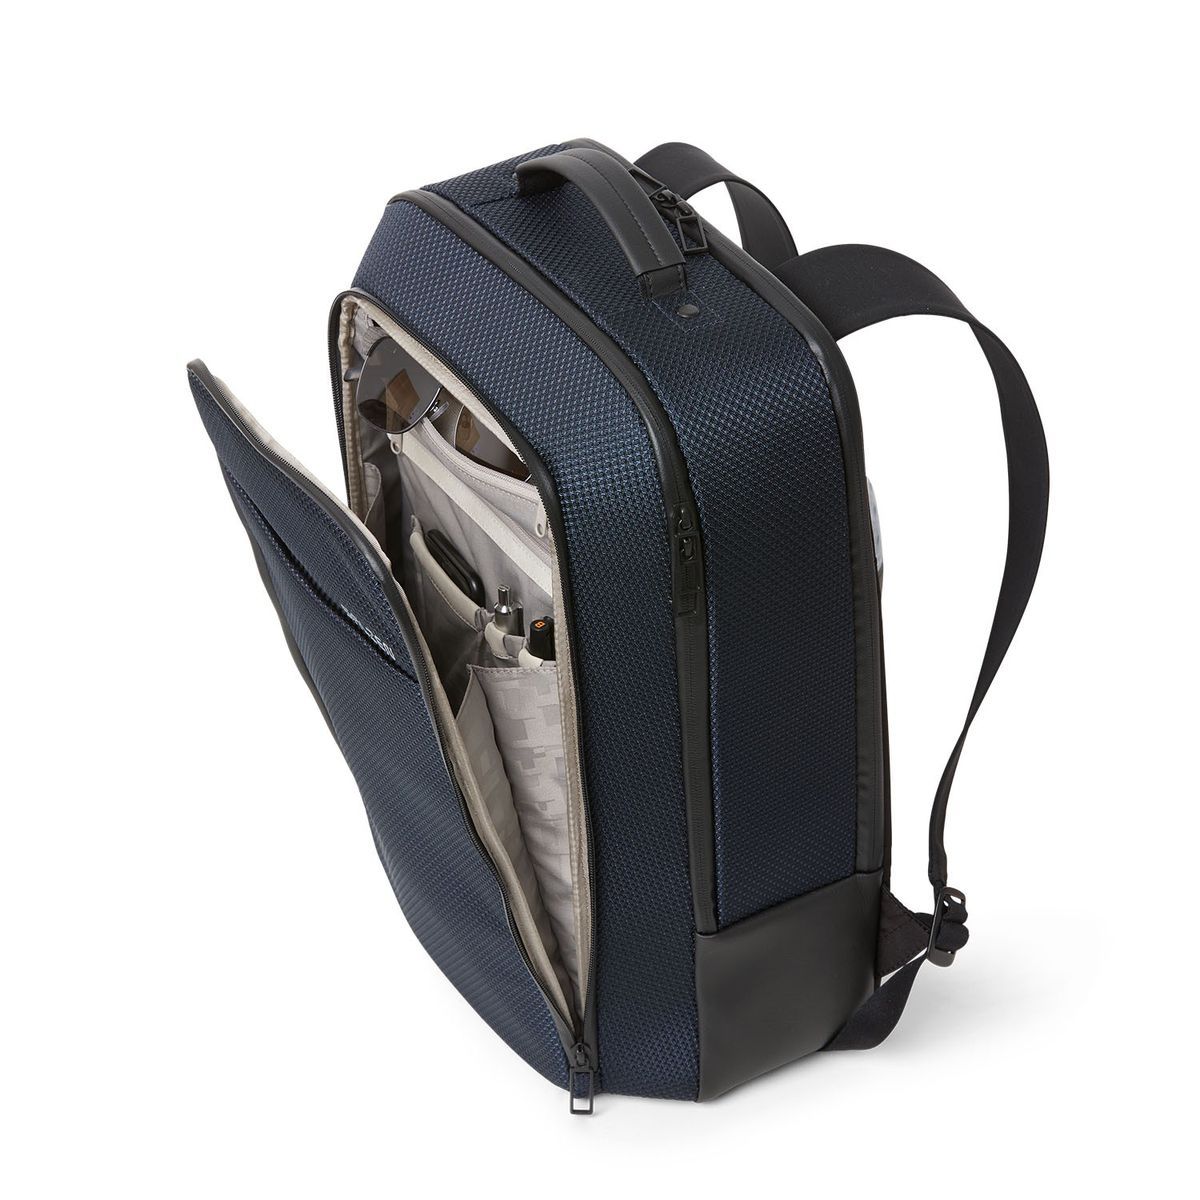 SALZEN Business Backpack SHARP Knight Blue